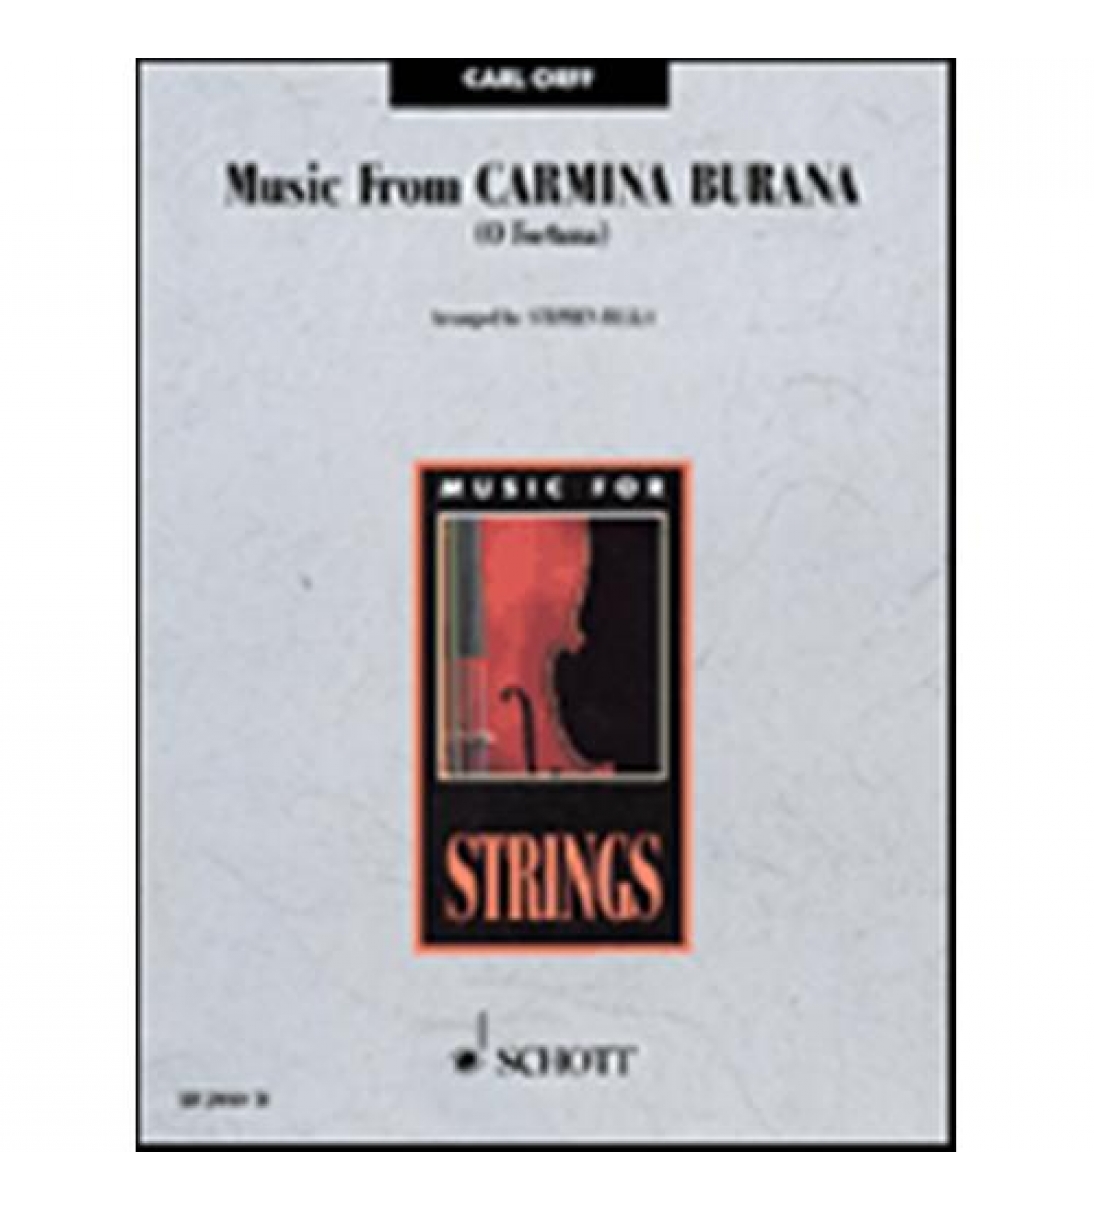 Music from Carmina Burana